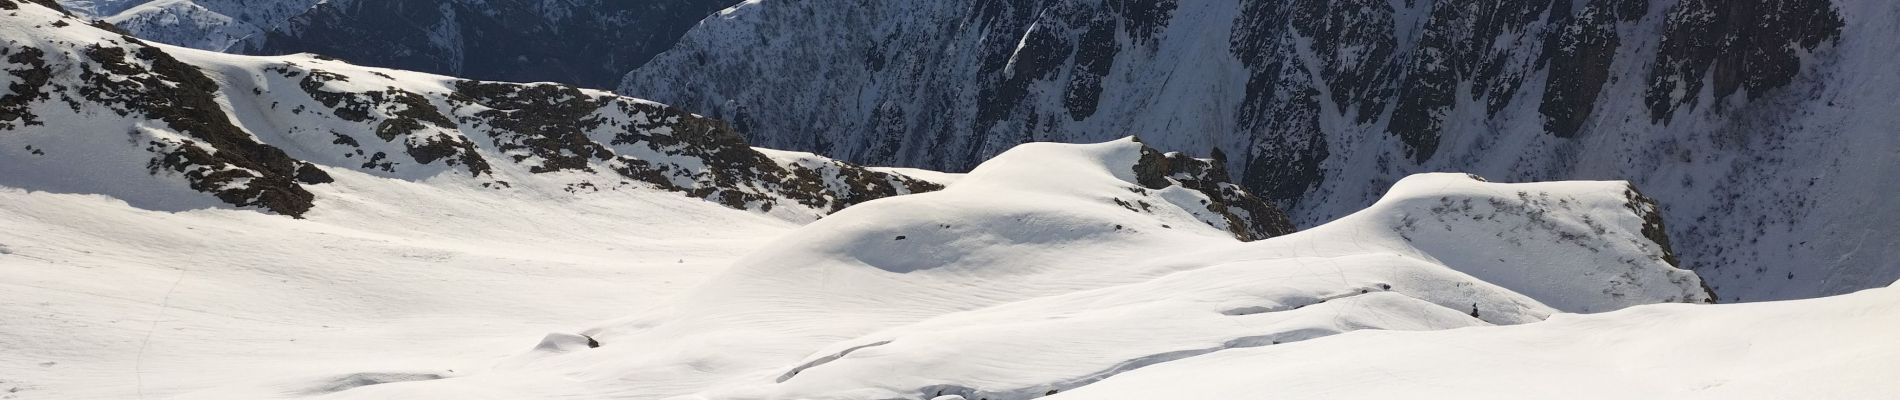 Randonnée Ski de randonnée Saint-Colomban-des-Villards - col des Balmettes et descente dans la combe rousse  - Photo